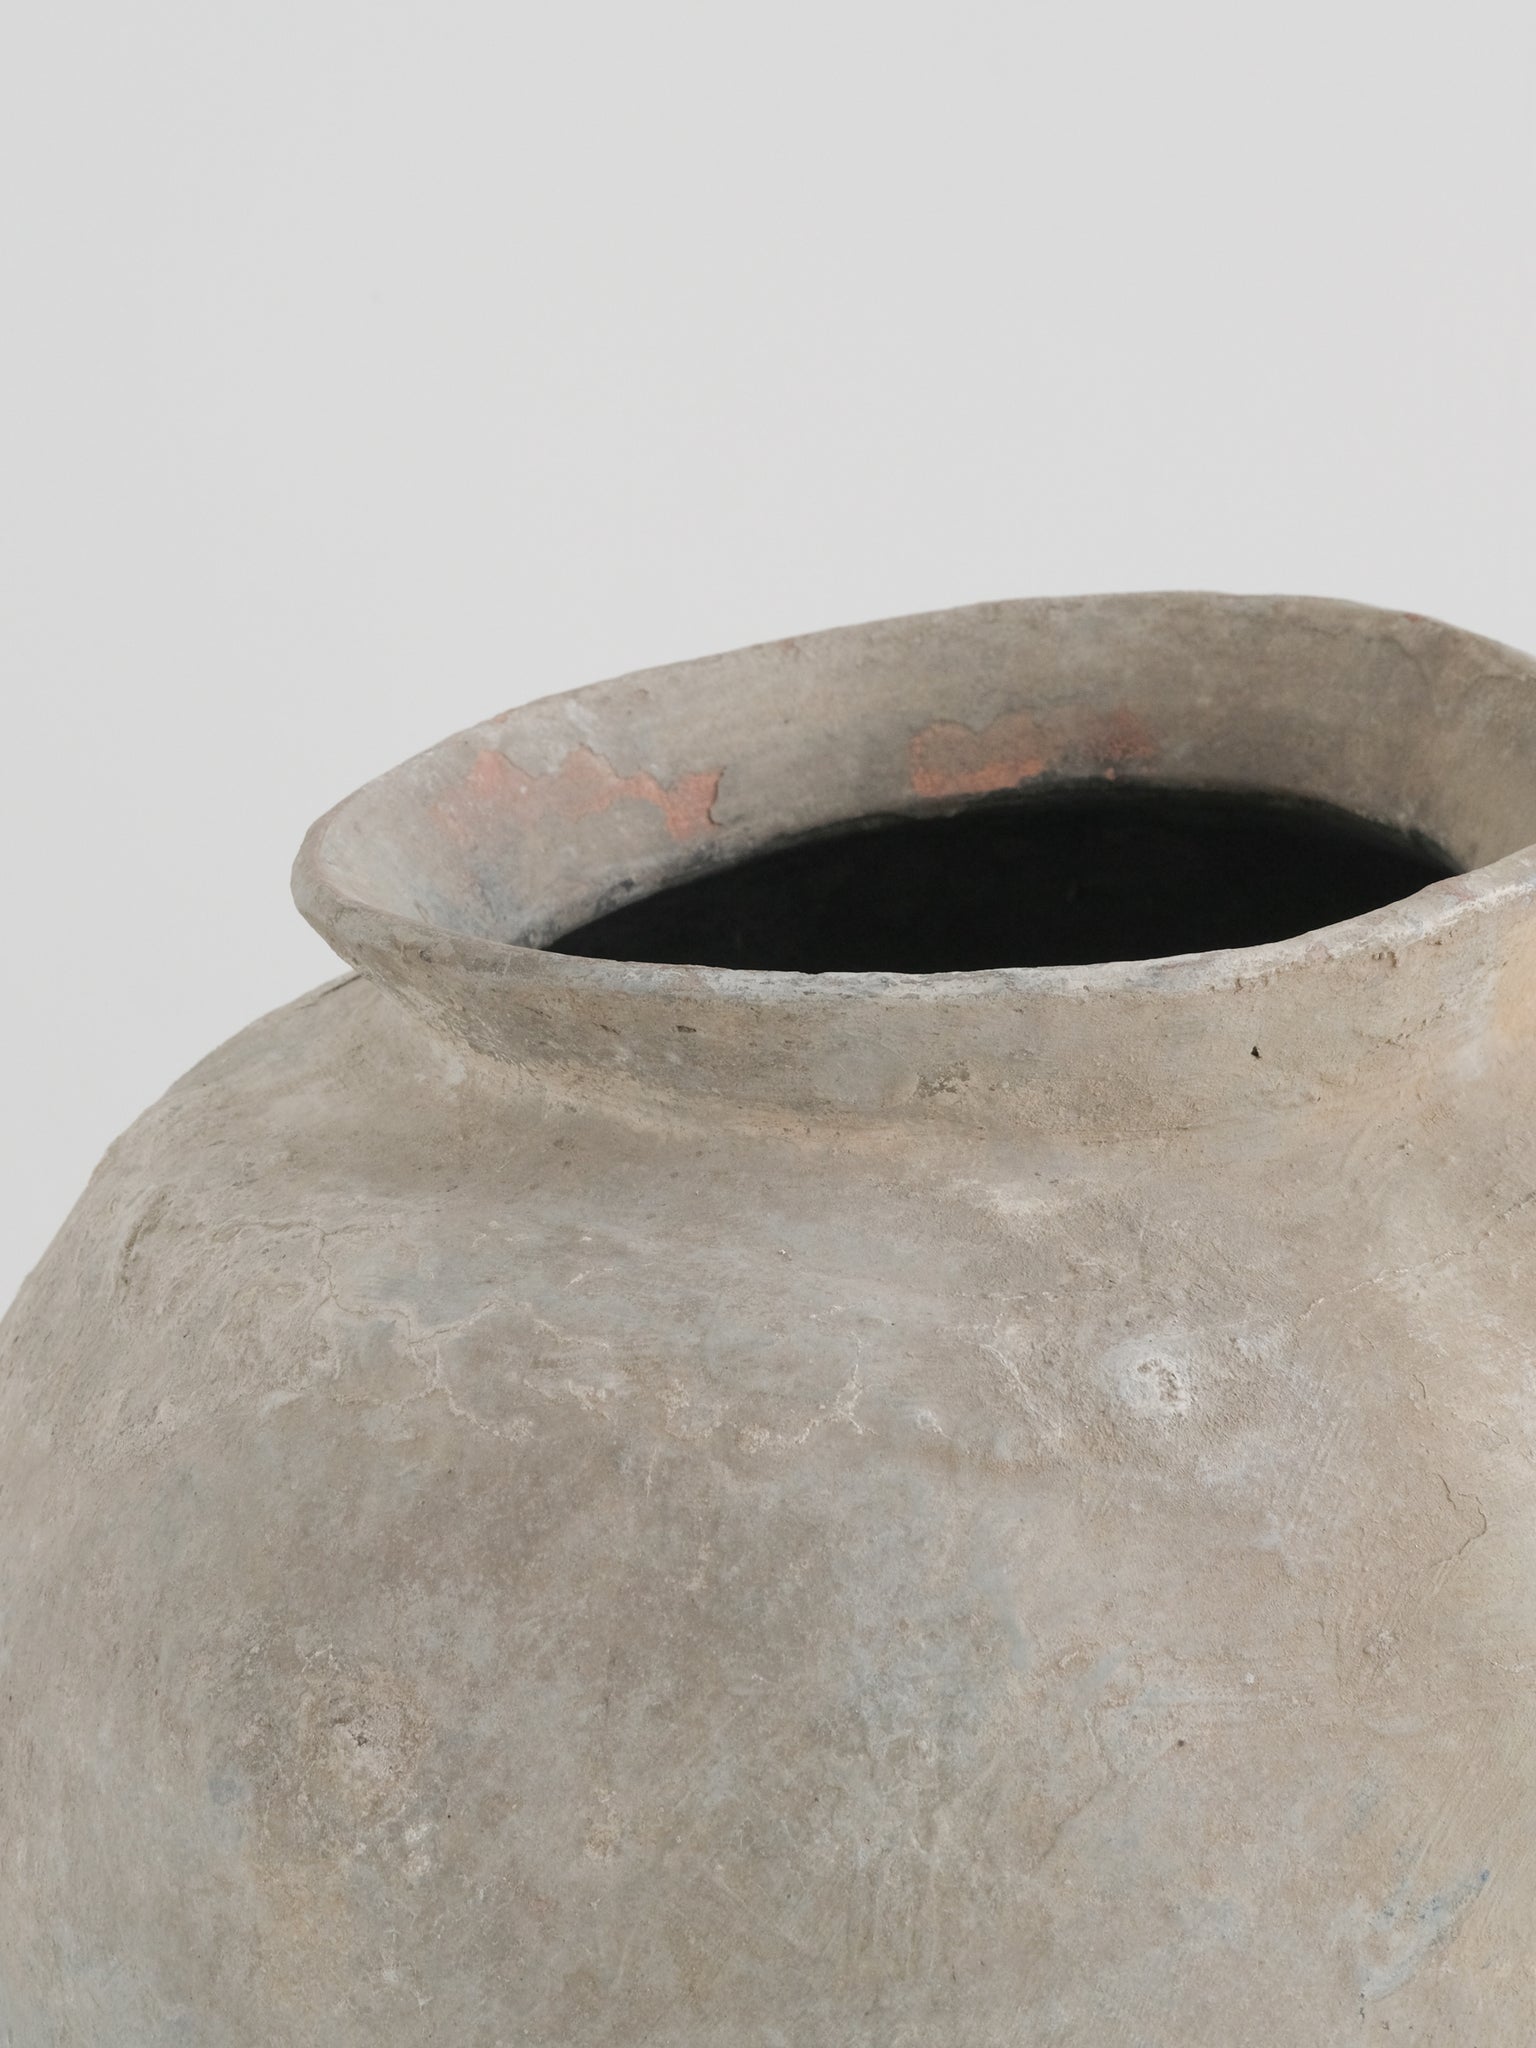 Antique Terracotta Jar